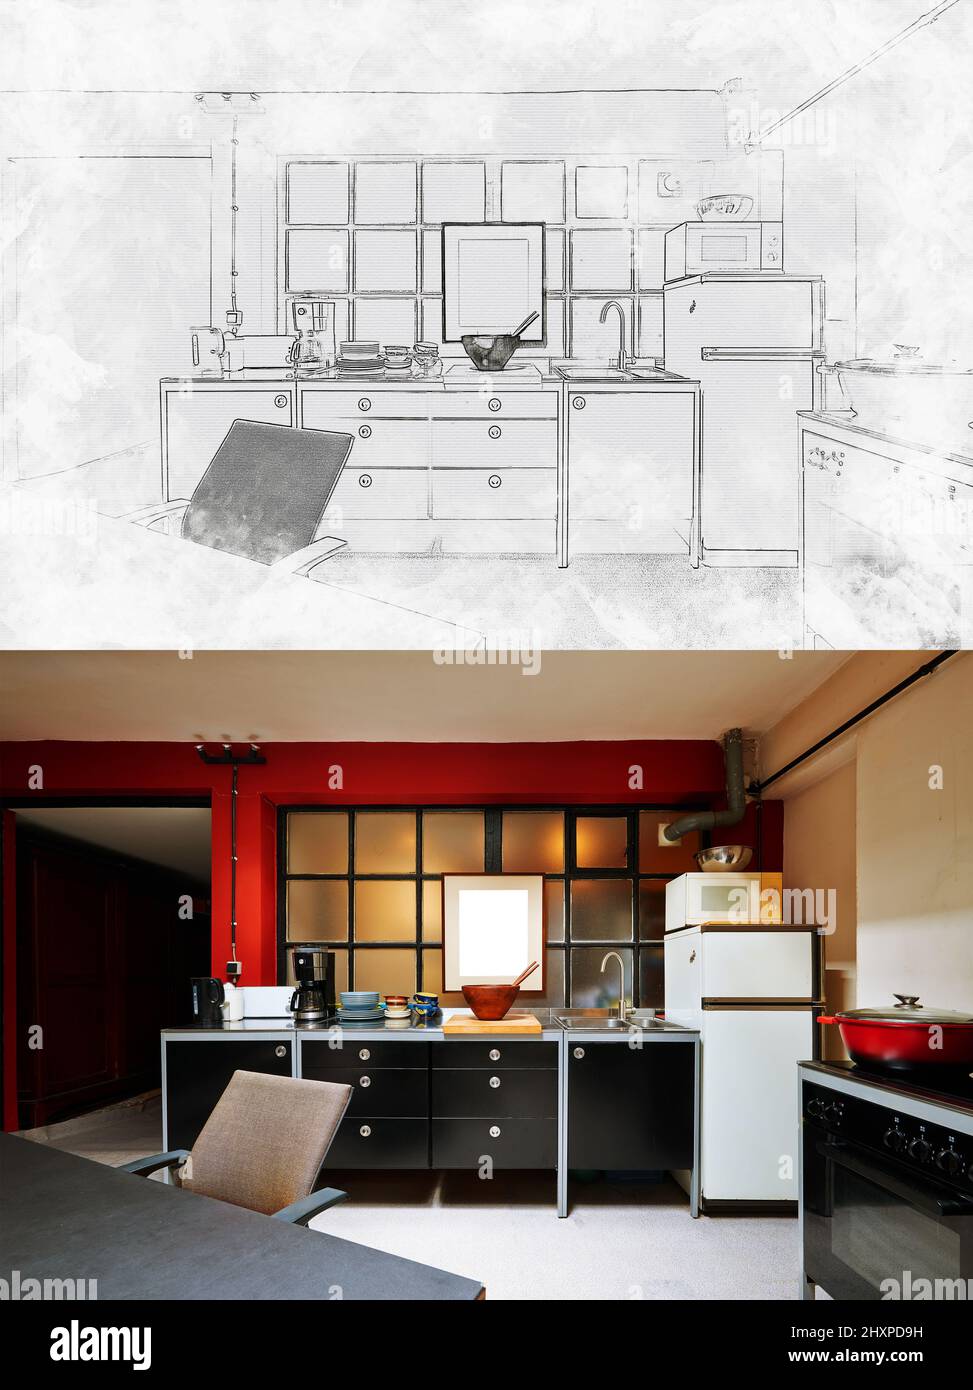 Projet pour une cuisine moderne en grenier grundy et sa réalisation finale Banque D'Images